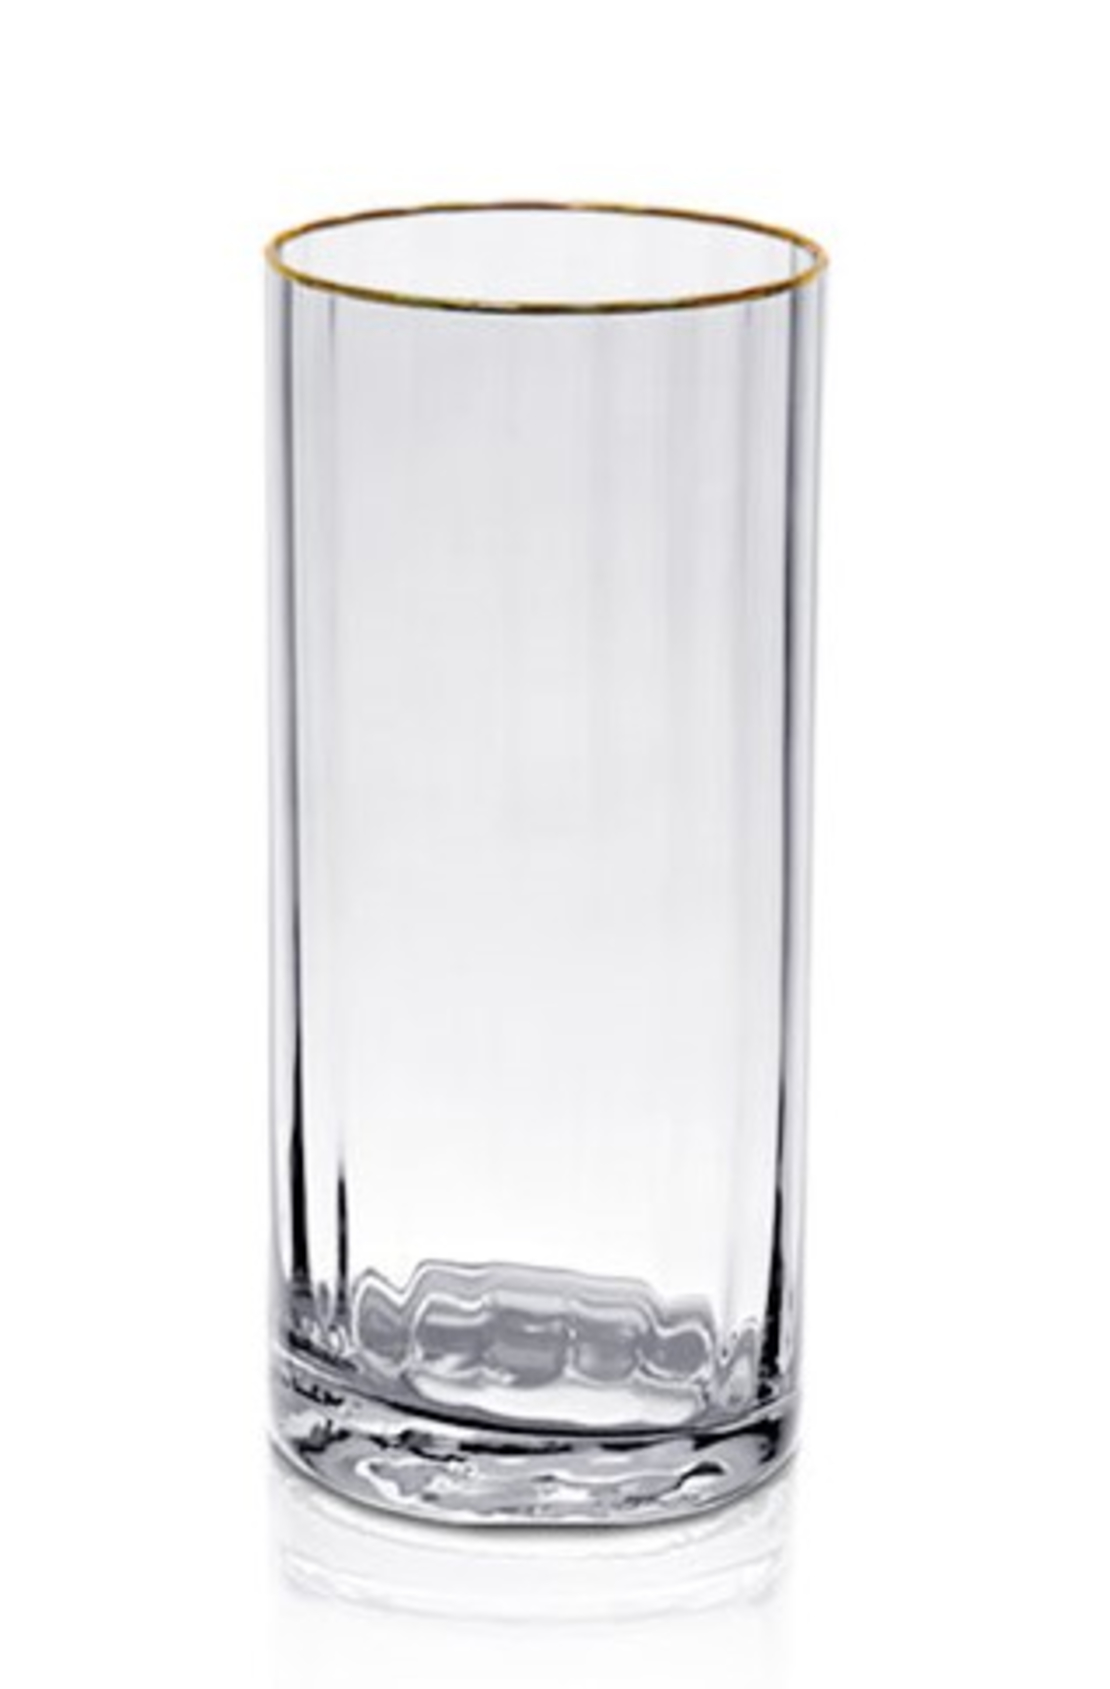 סט 6 כוסות זכוכית שקופה ופס זהב